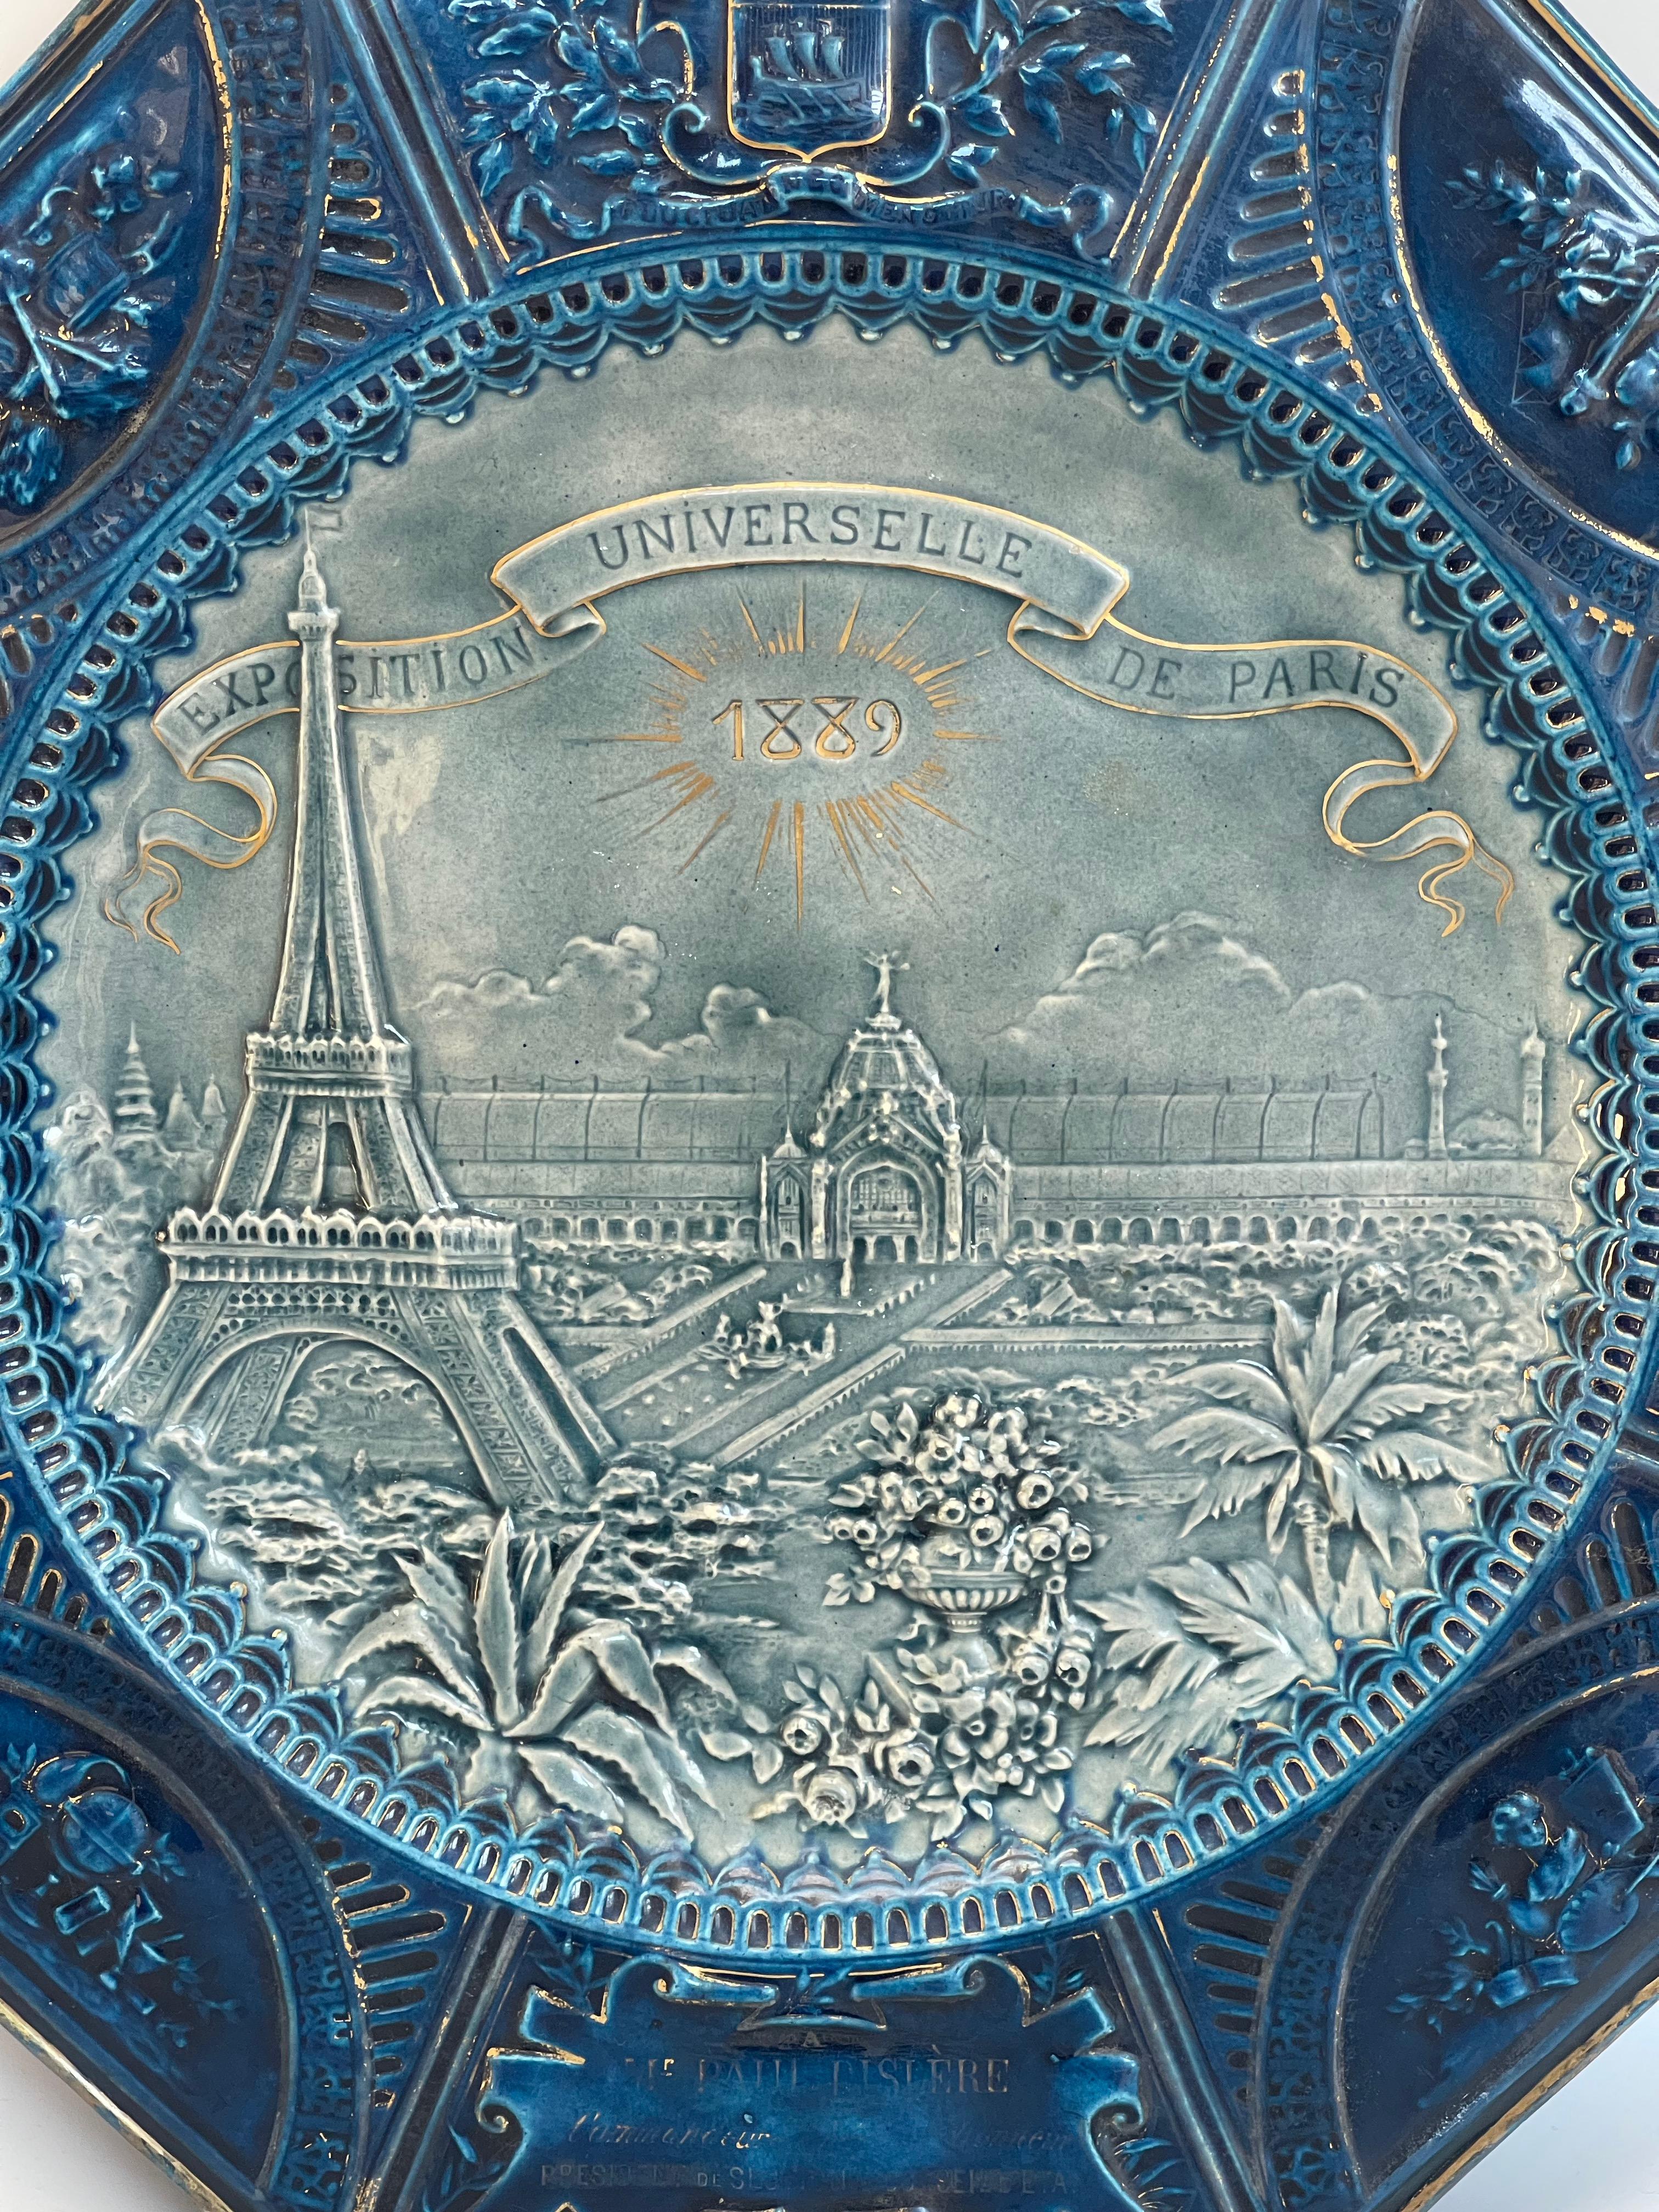 UNIVERSALAUSSTELLUNG 1889 Große achteckige Schale in emailliertem Schlicker, die blaue und vergoldete Flügel mit dem Wappen von Paris, mit Laub Kartuschen, Girlanden, Attribute der Wissenschaften, Künste, Musik und Landwirtschaft geschmückt, die